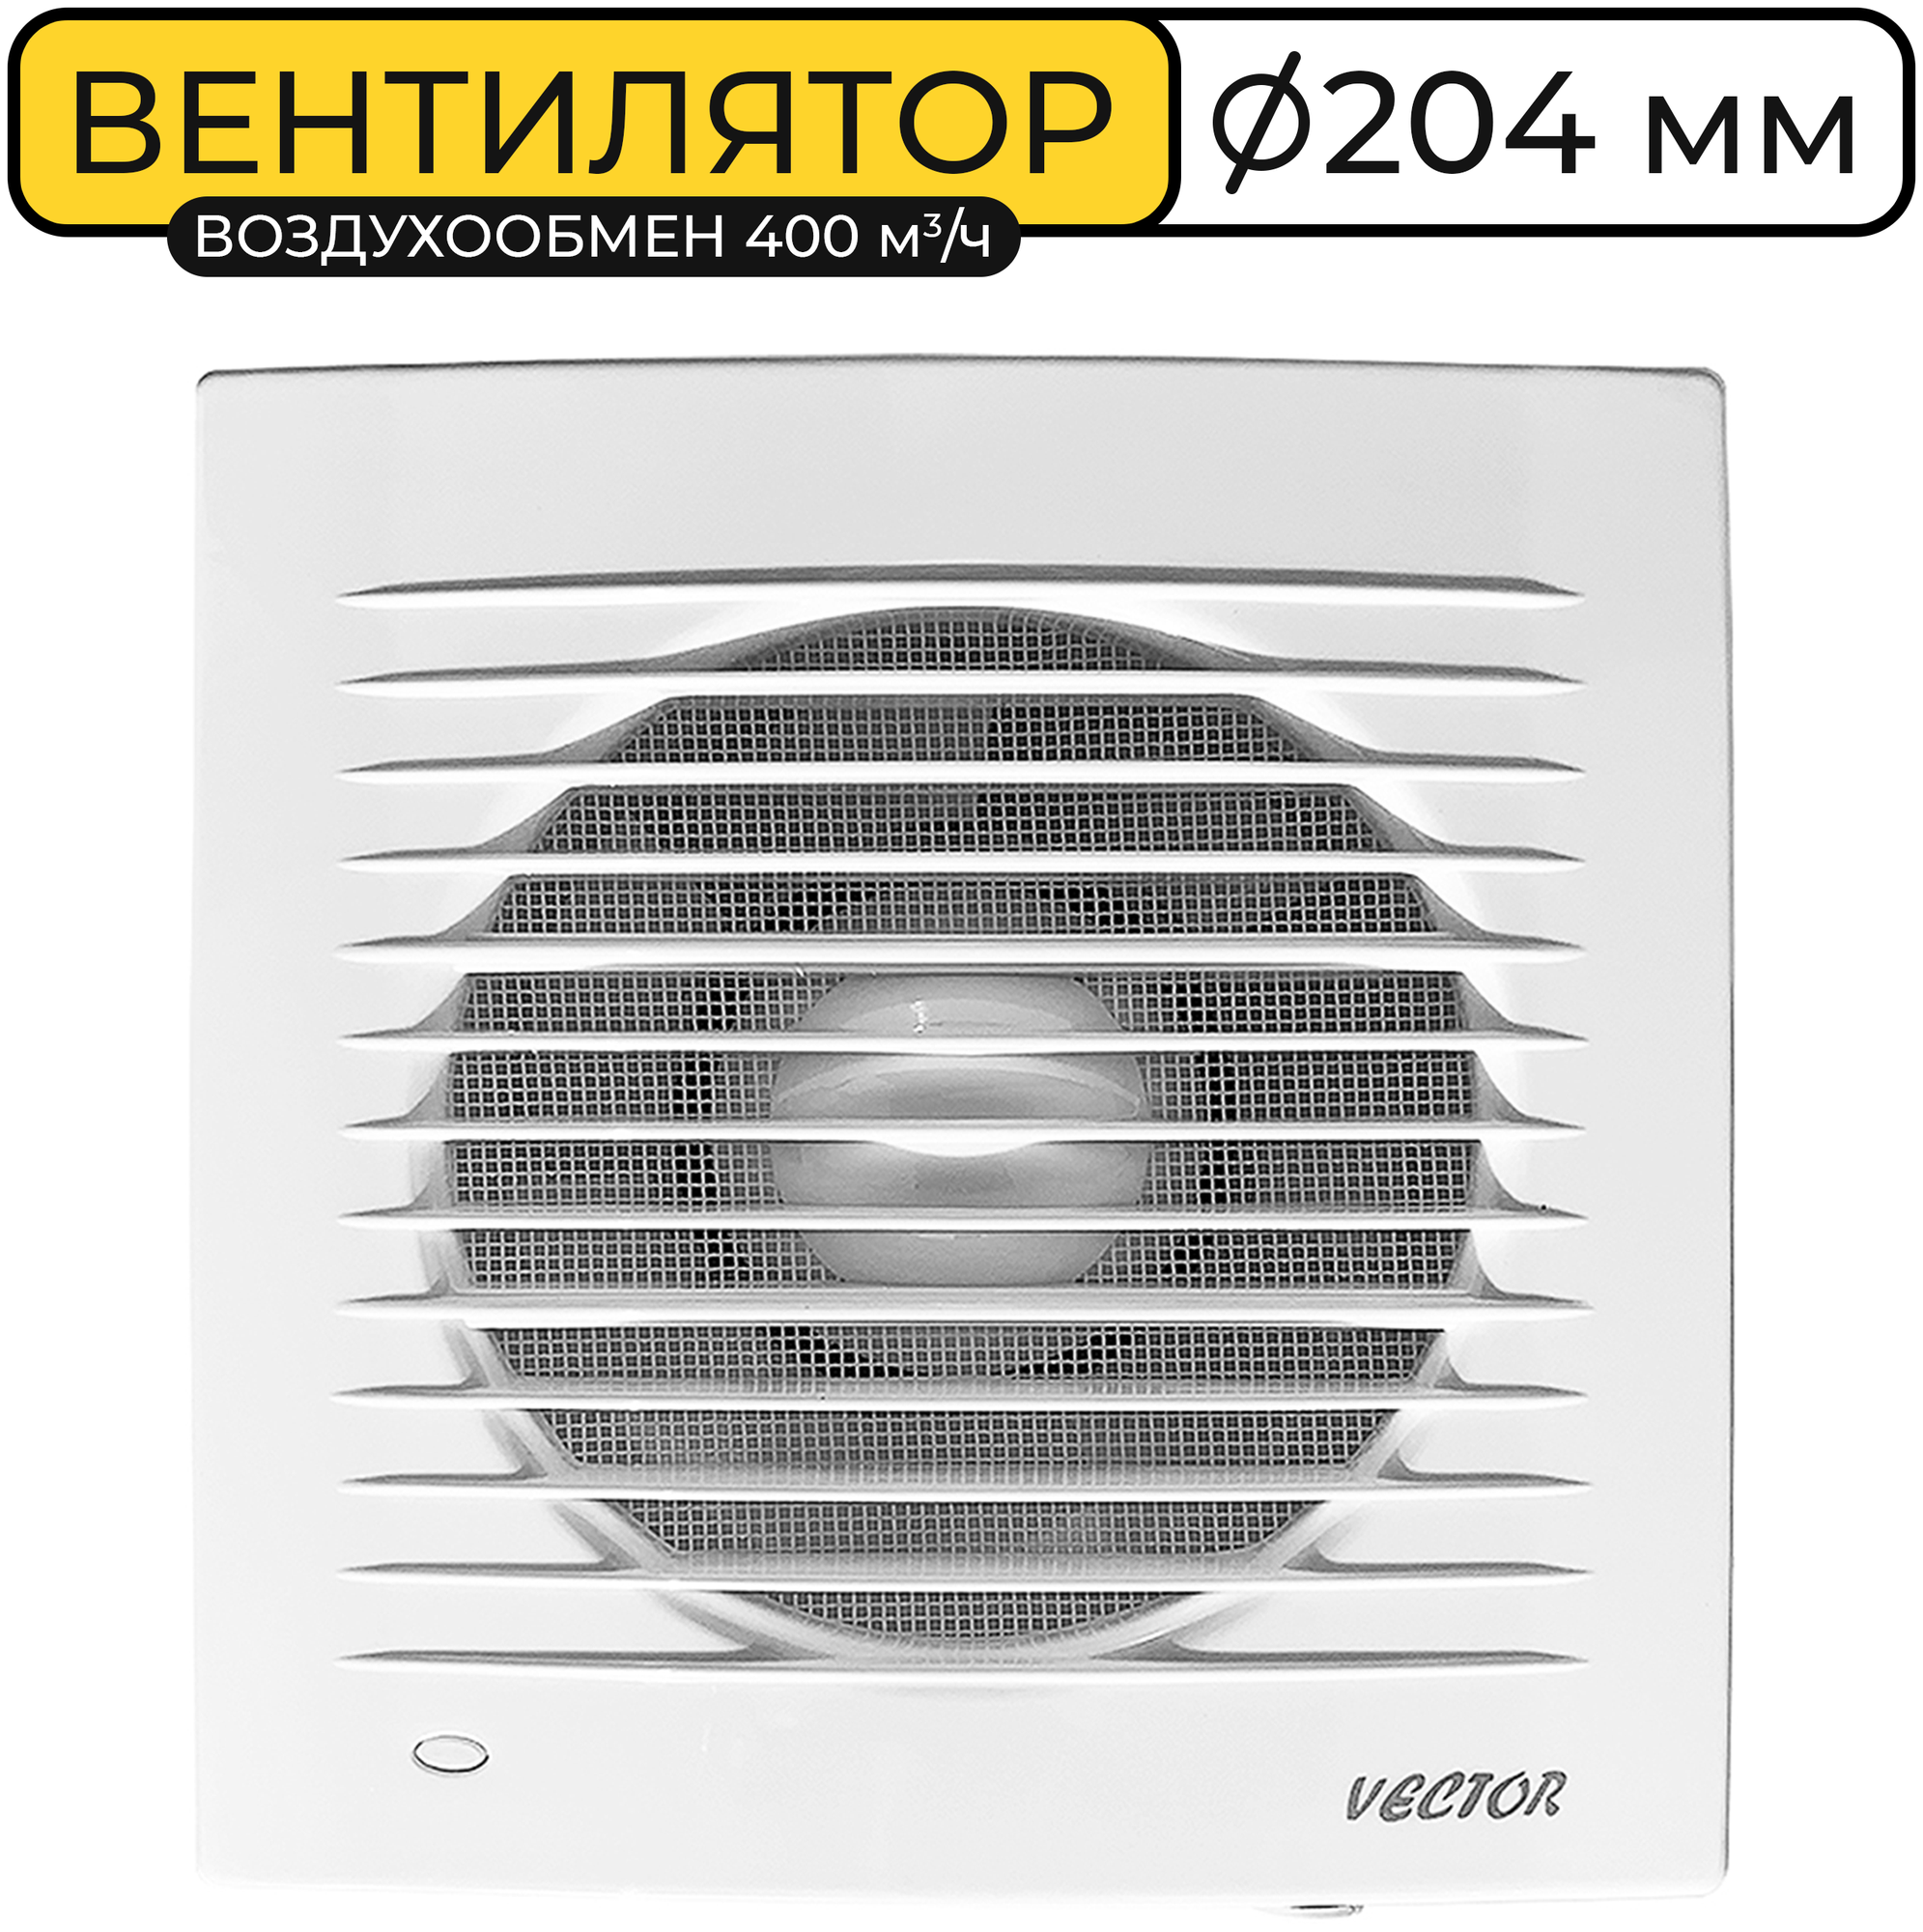 Вентилятор вытяжной Vector 200С, 204 мм., воздухообмен 400 м3/ч, 21 Вт., белый